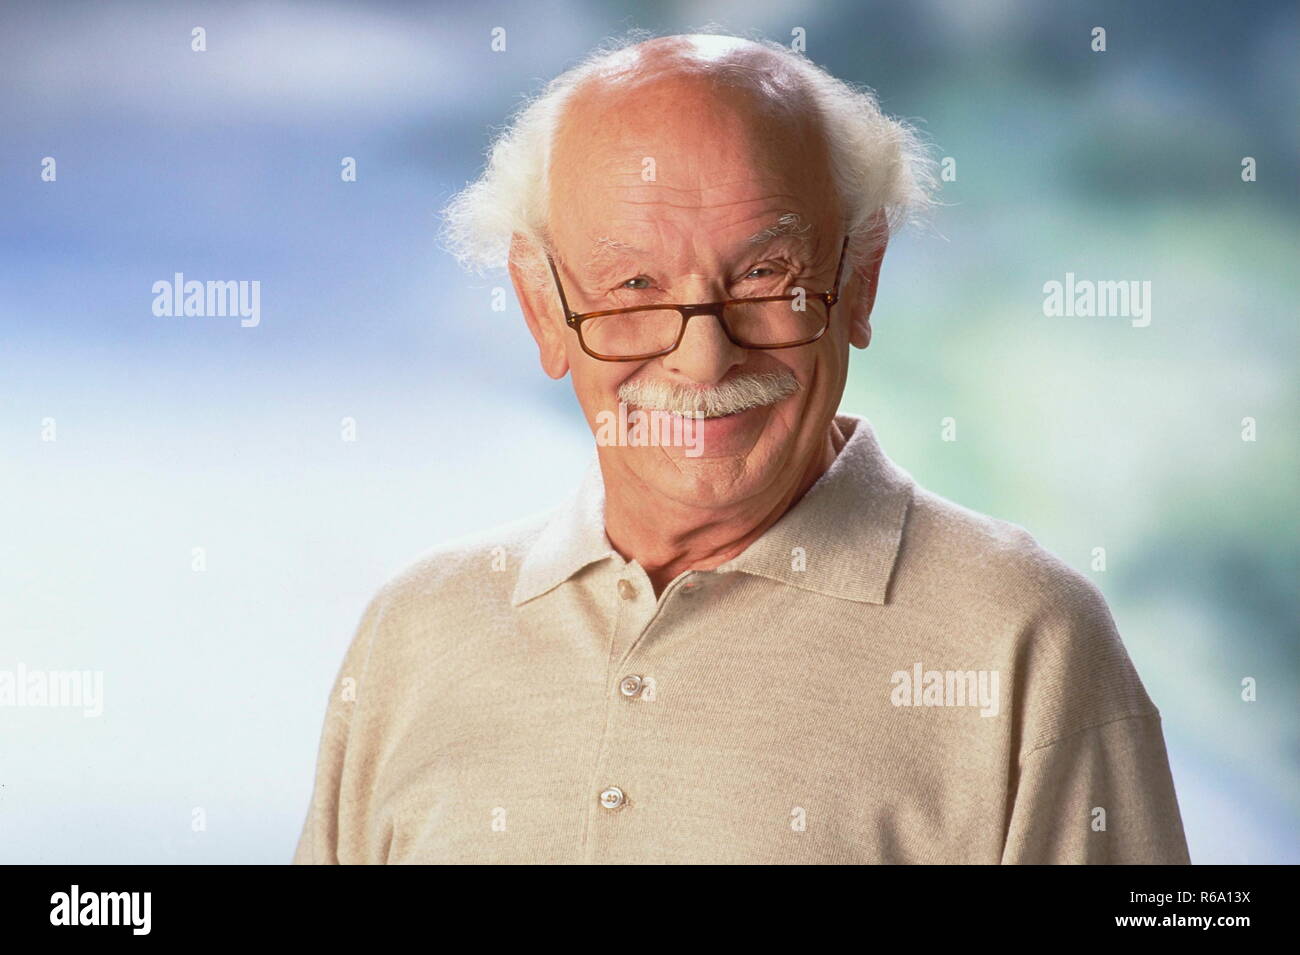 Portrait, weisshaariger Senior mit Oberlippenbart und Brille Stock Photo